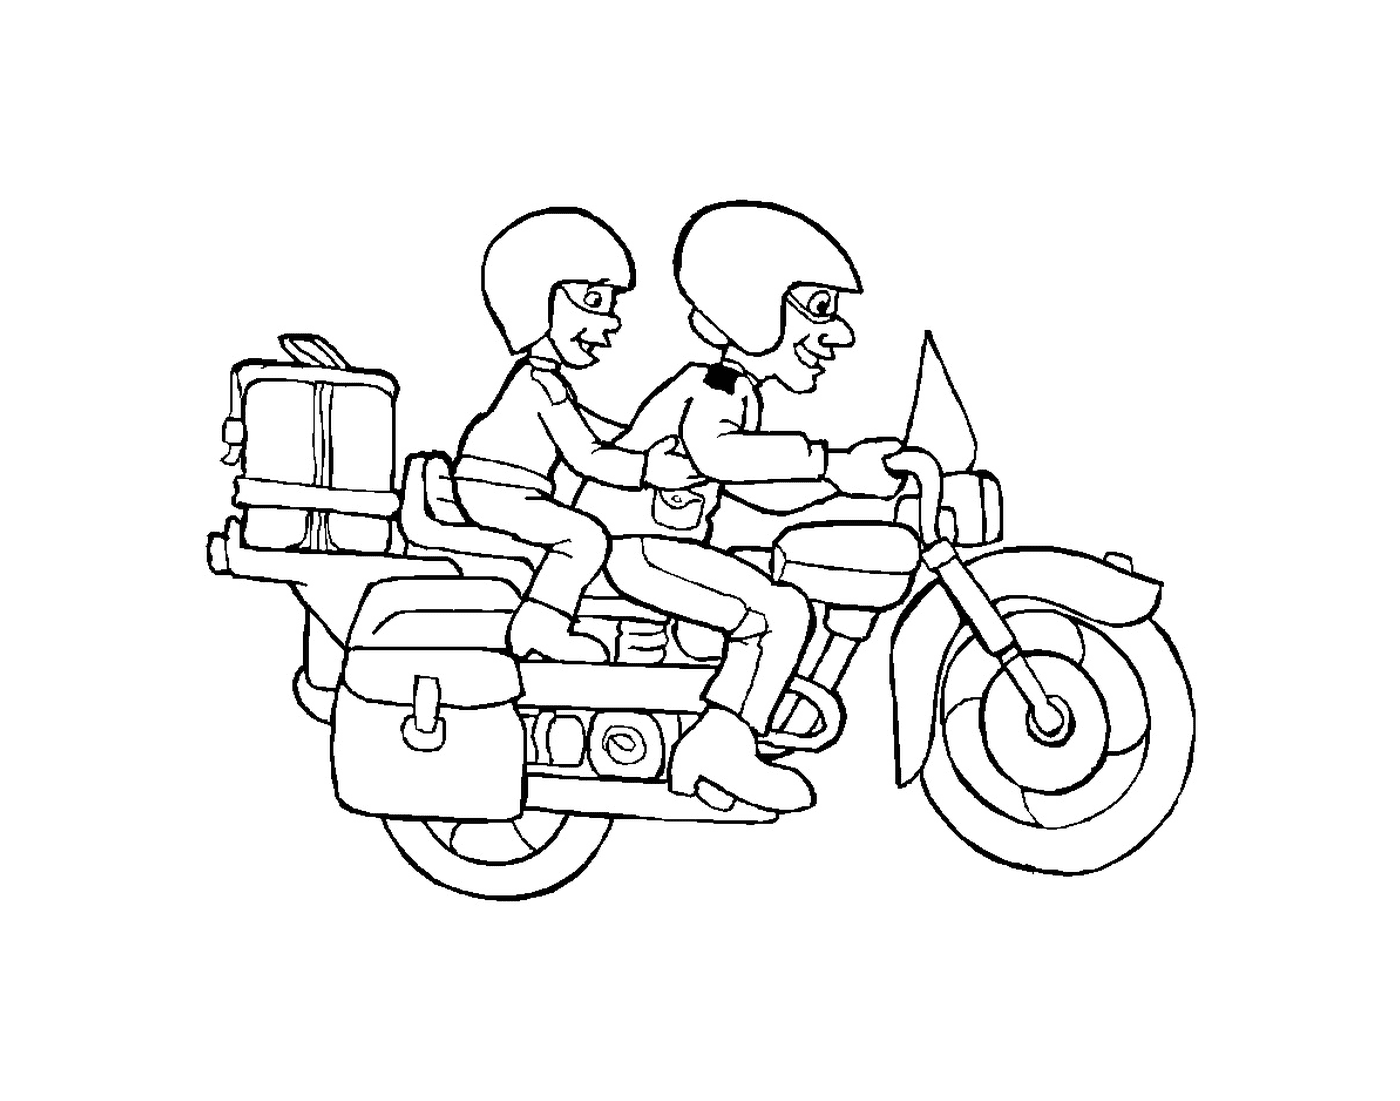  Dos personas en una motocicleta 